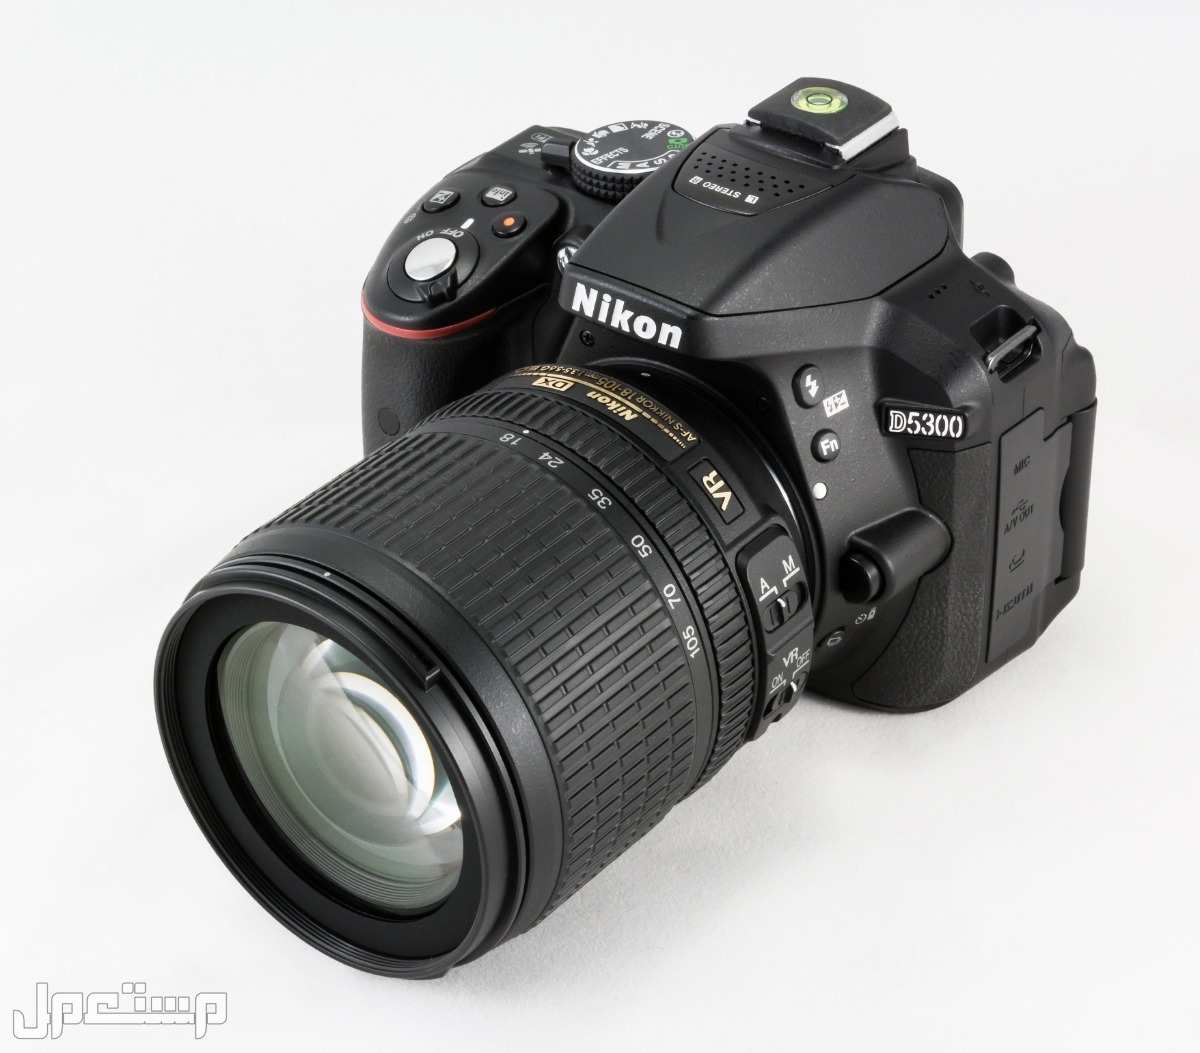 مواصفات ومميزات وأسعار أفضل أنواع كاميرات نيكون للمحترفين في العراق كاميرا Nikon D5300